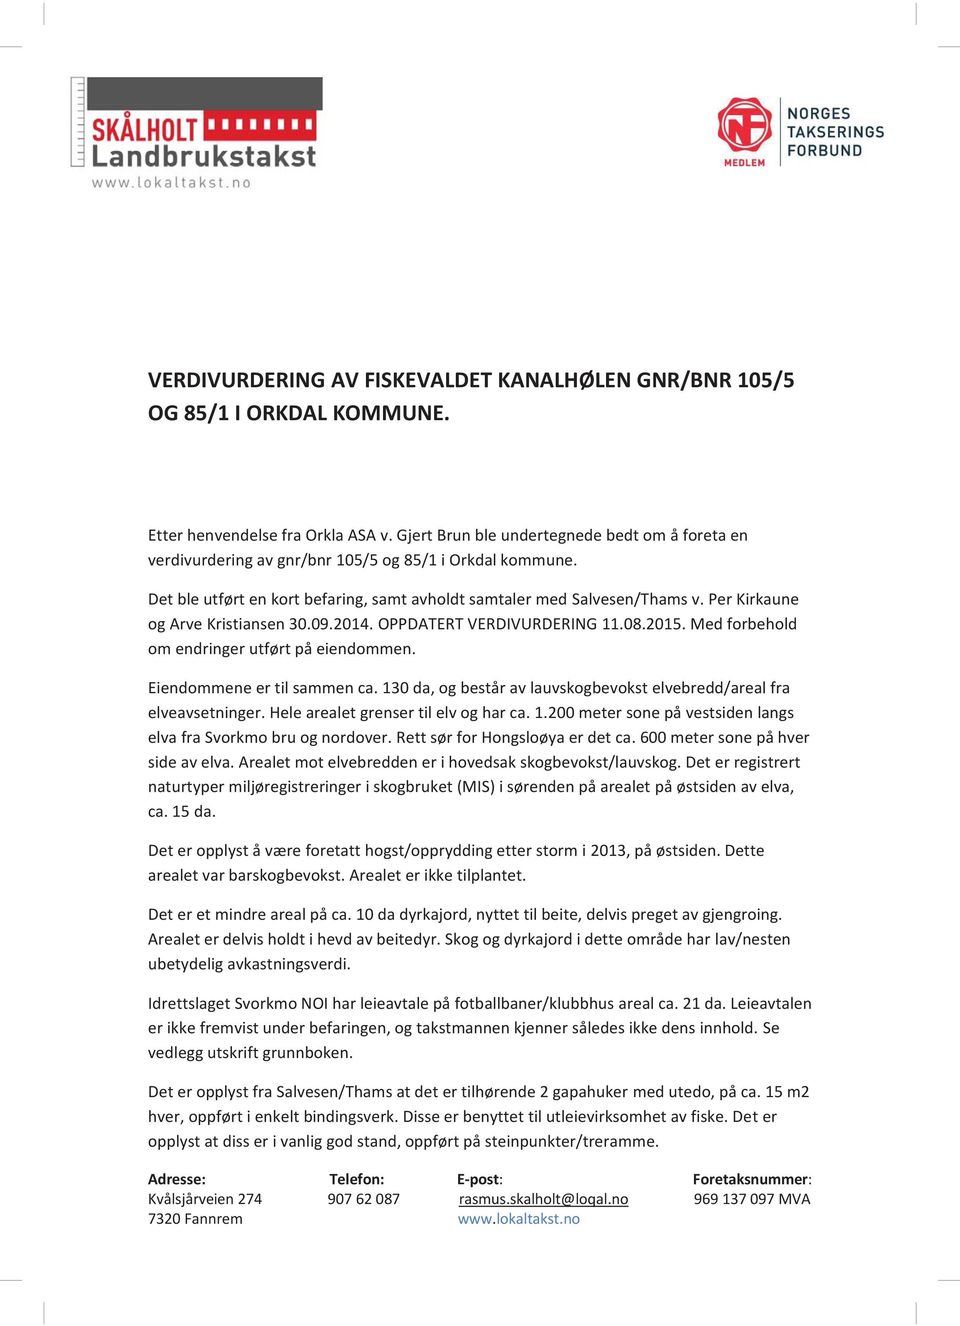 Per Kirkaune og Arve Kristiansen 30.09.2014. OPPDATERT VERDIVURDERING 11.08.2015. Med forbehold om endringer utført på eiendommen. Eiendommene er til sammen ca.